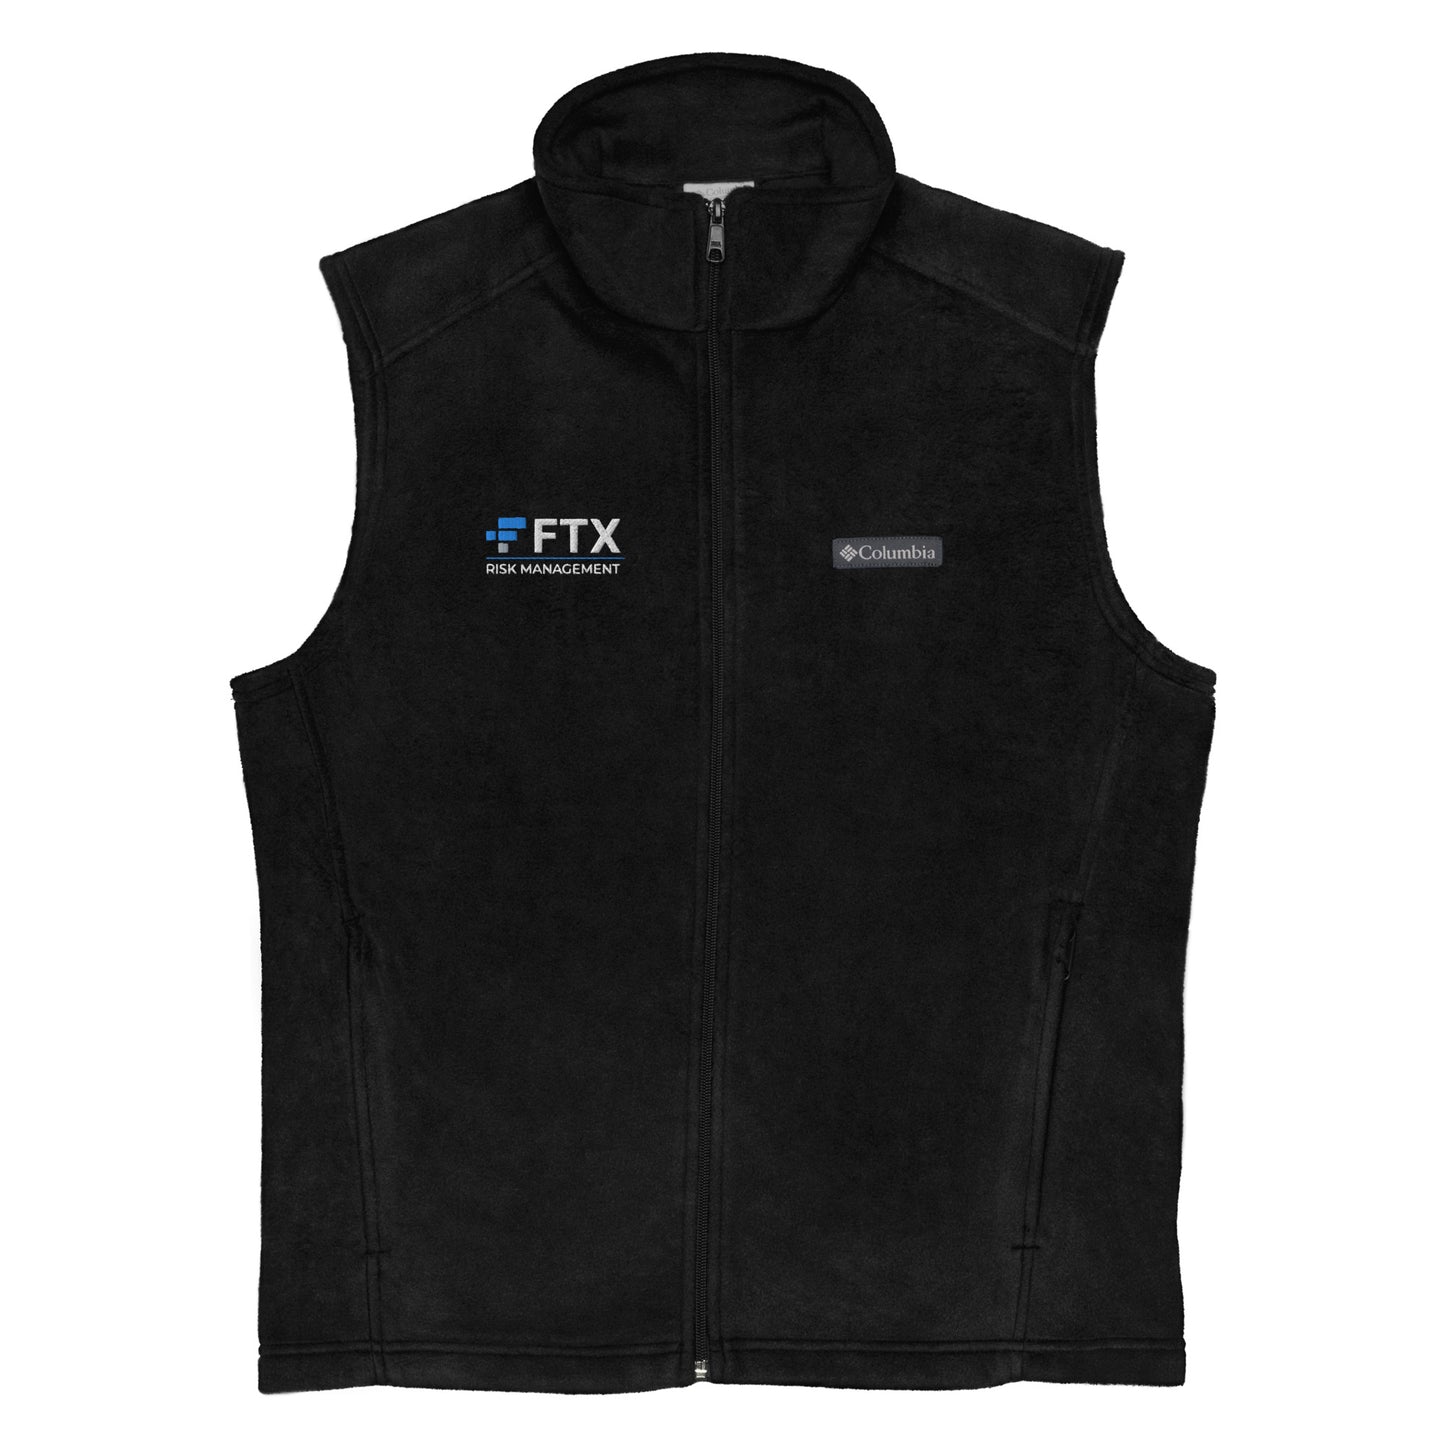 Columbia 'FTX Risk' Fleece Vest